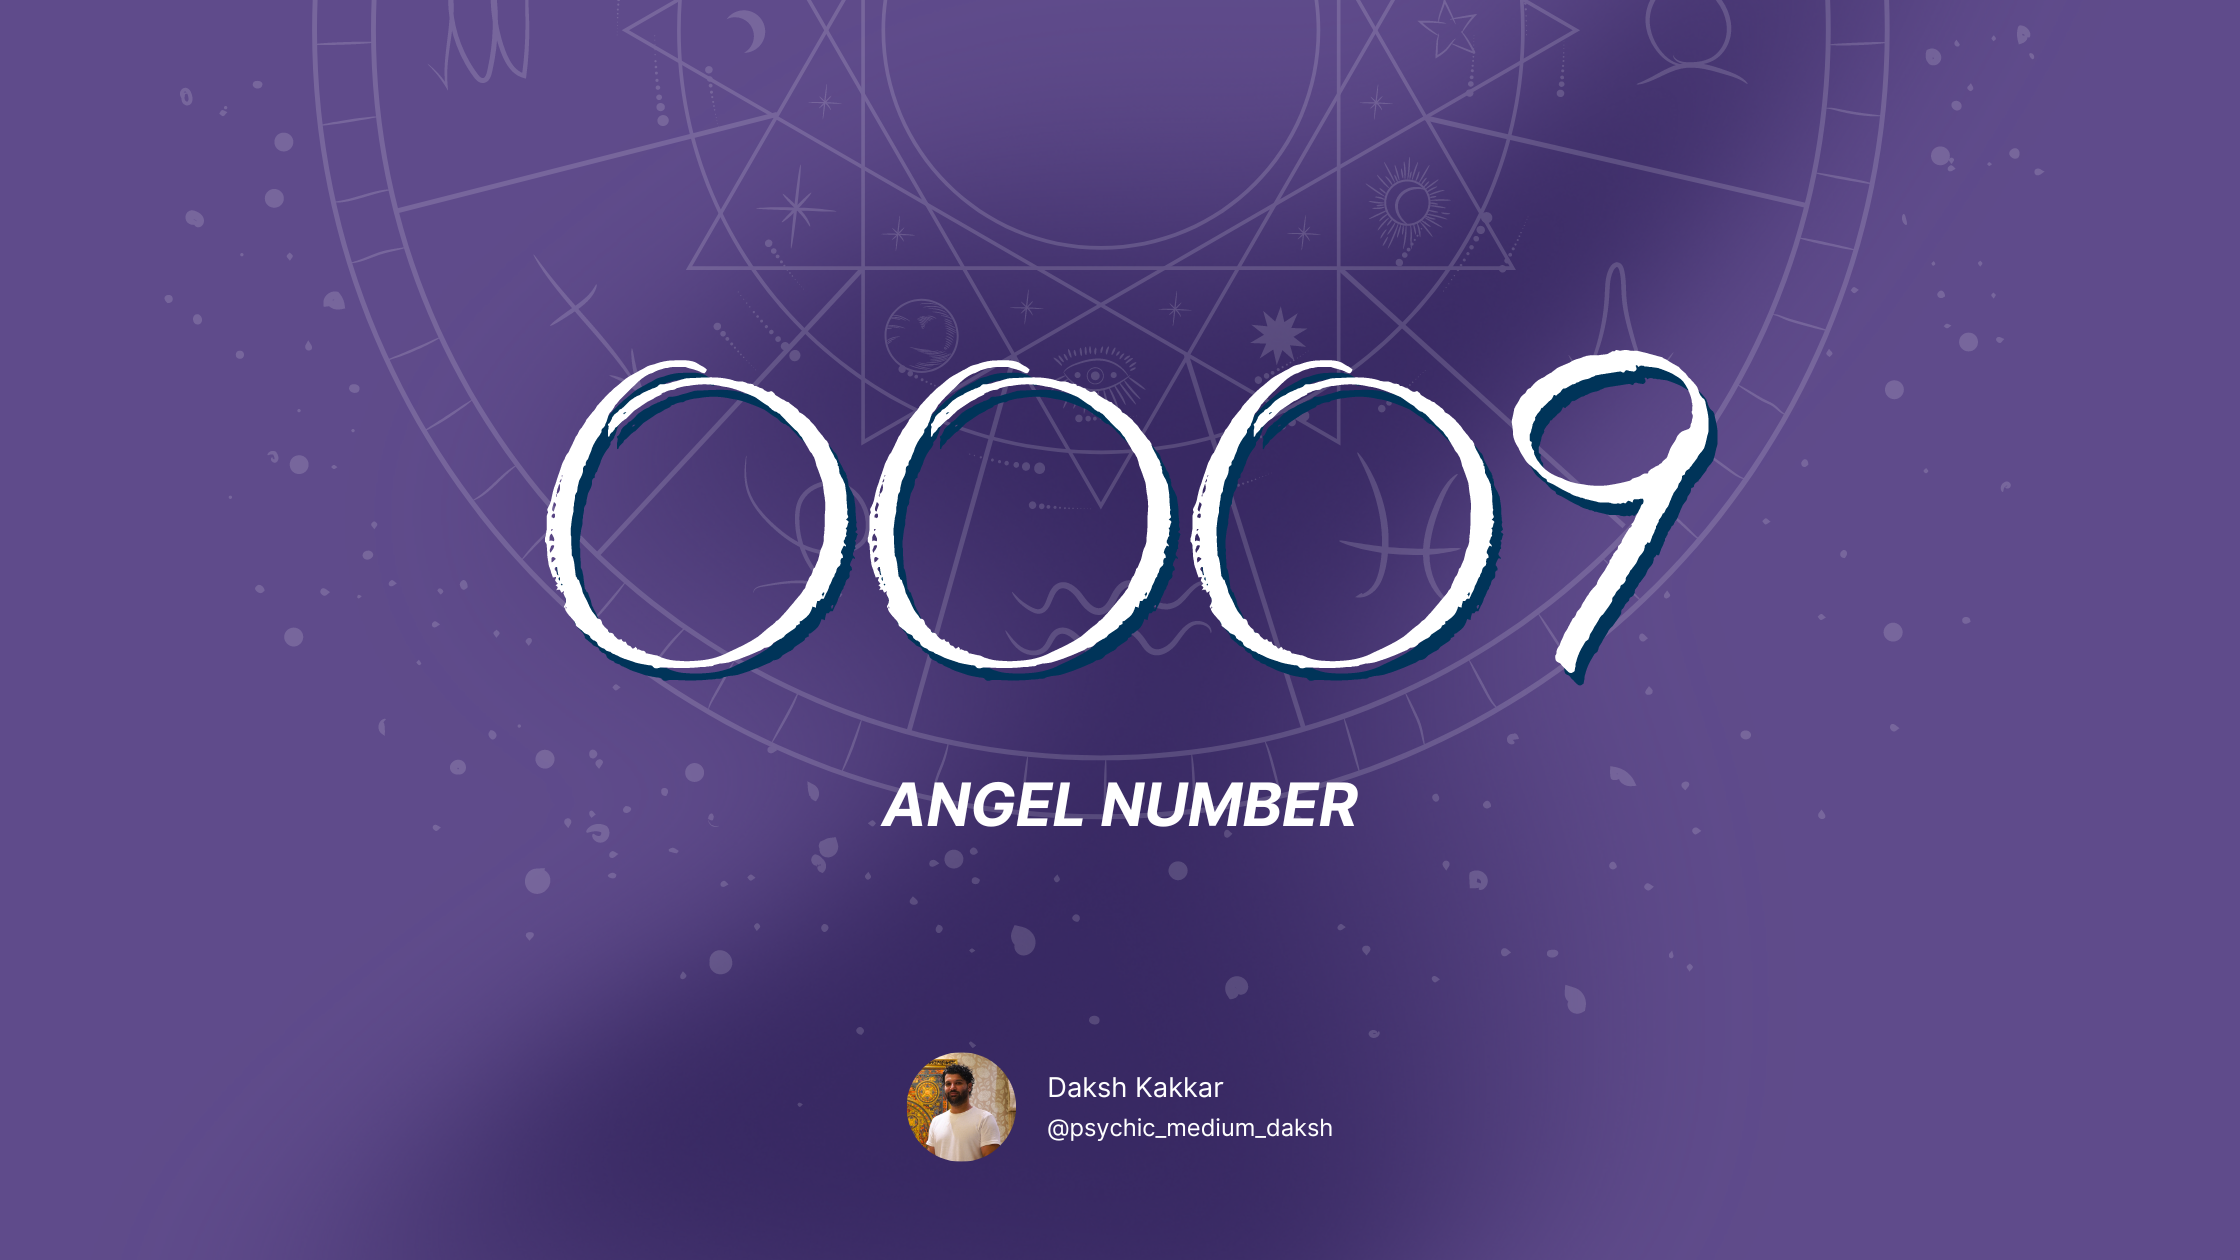 0009 angel number